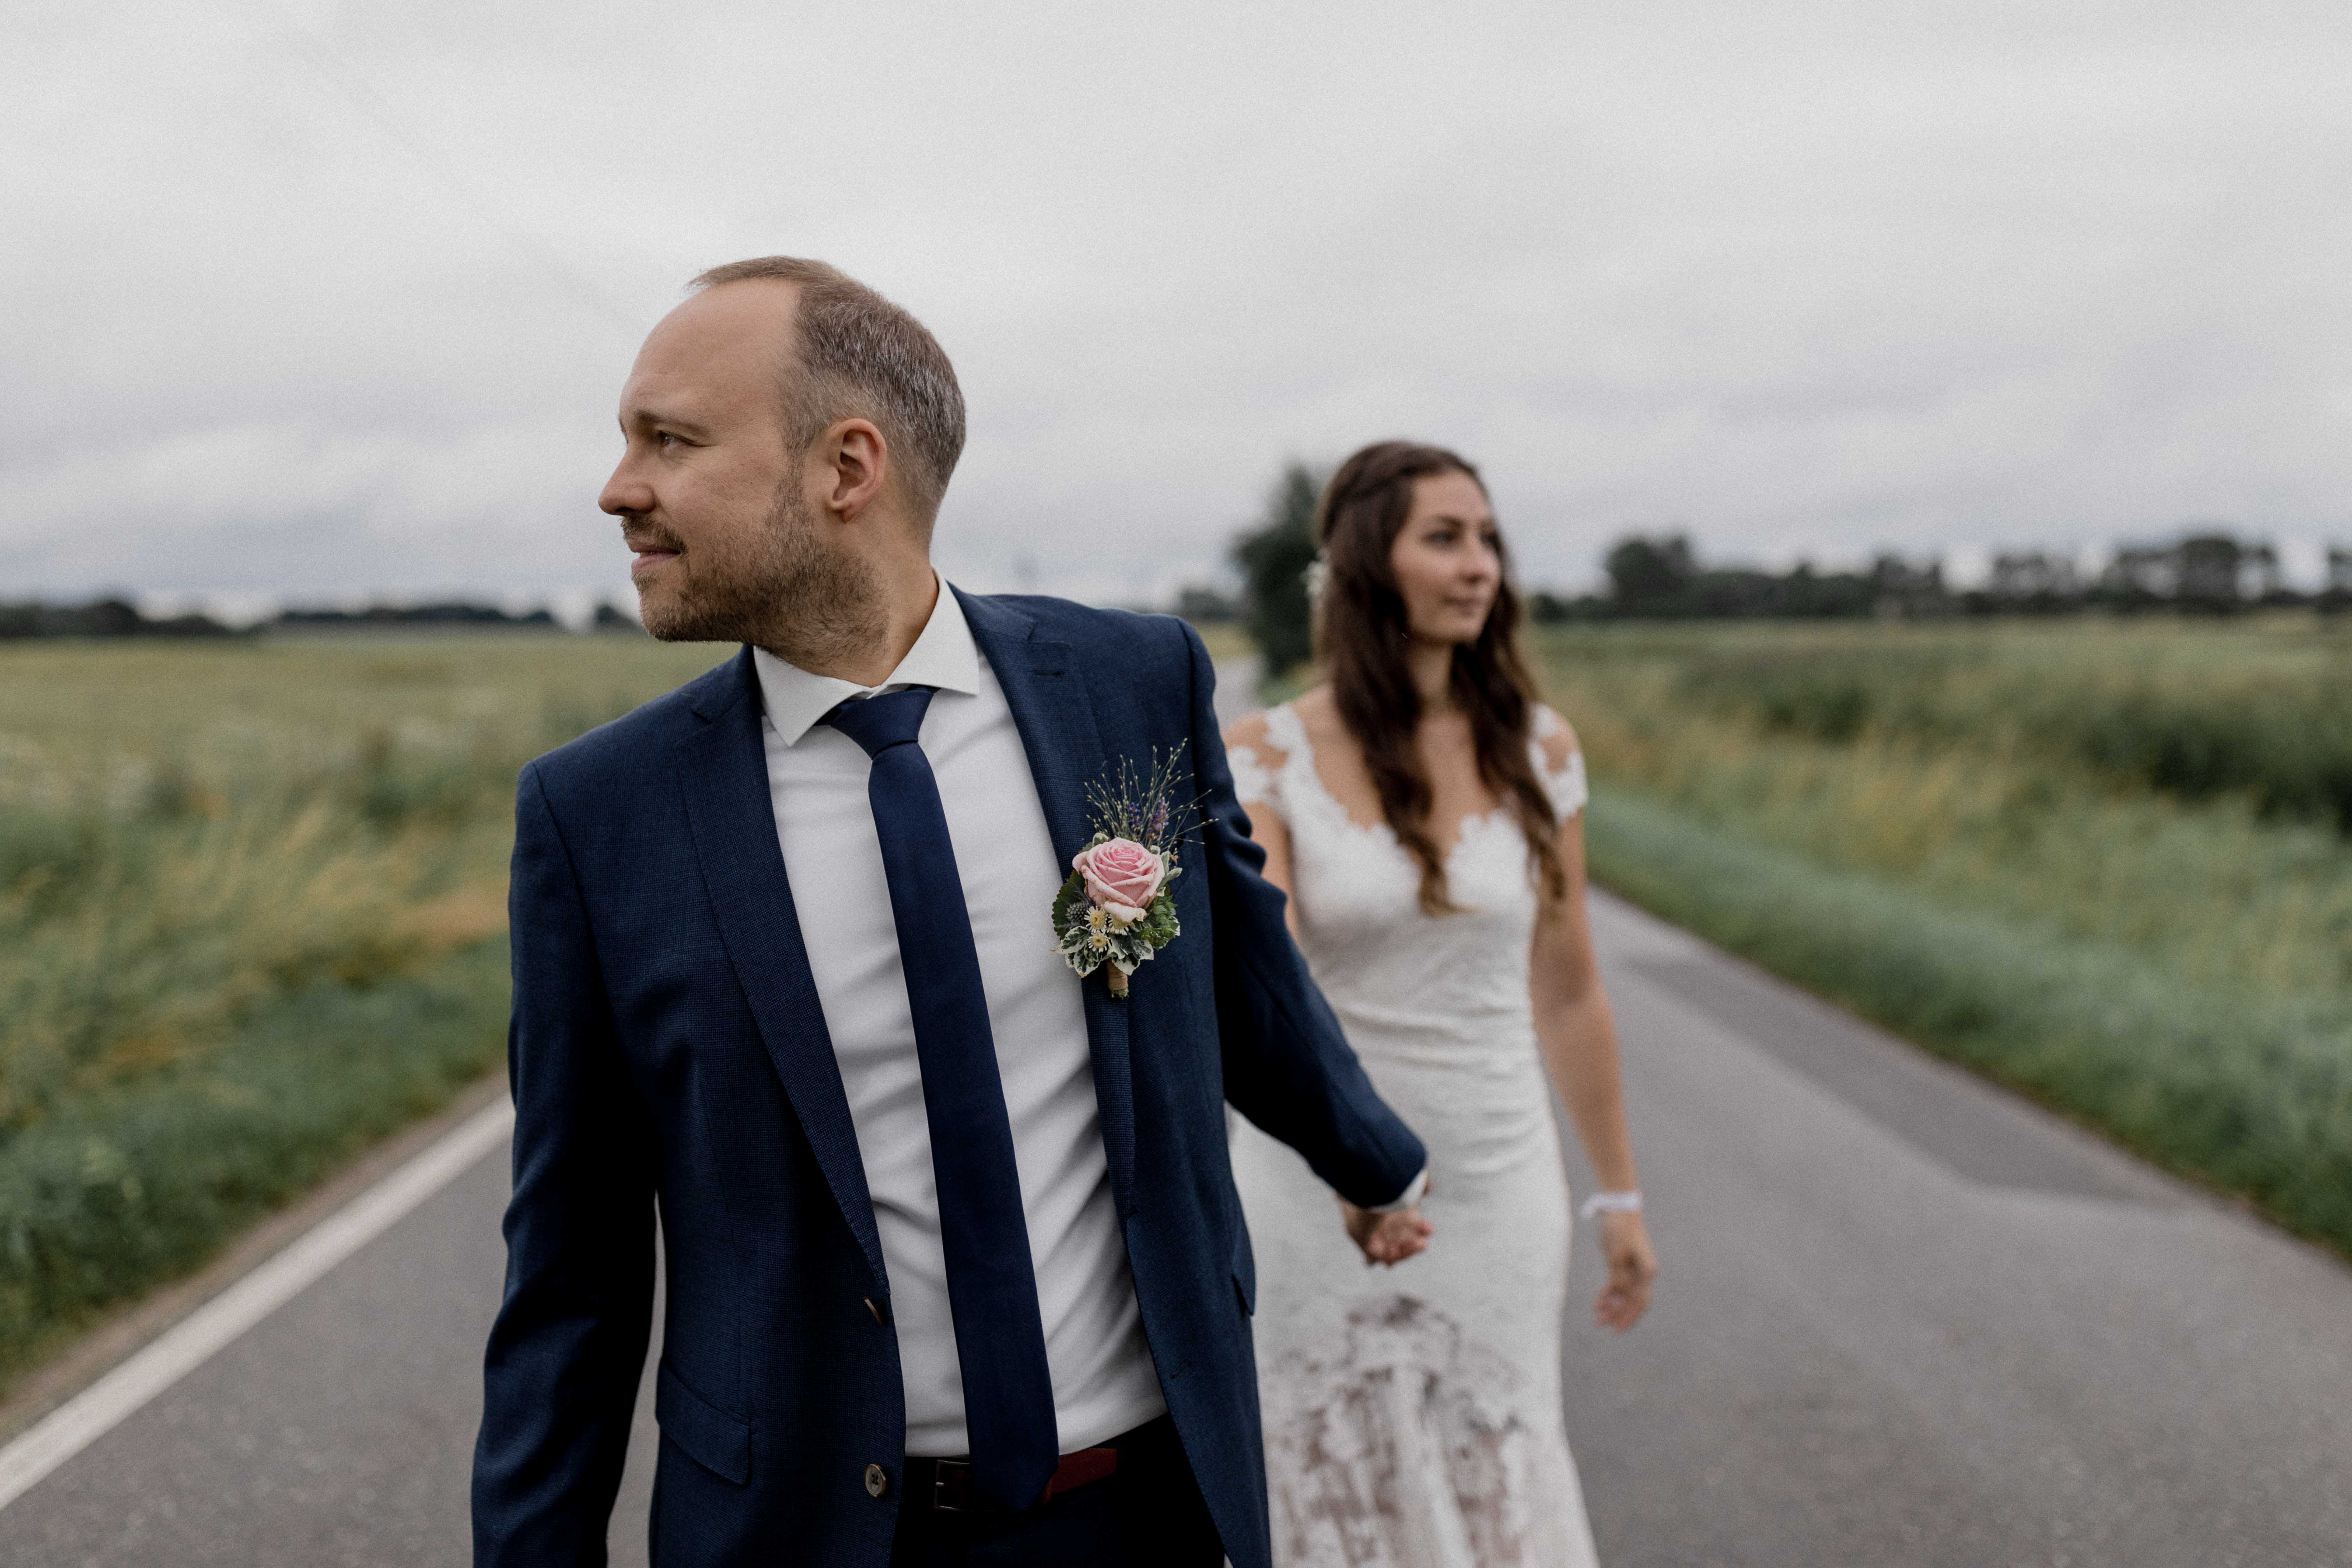 Hochzeitsfoto, aufgenommen von Tom und Lia Fotografie, Hochzeitsfotografen aus Rostock und Mecklenburg-Vorpommern.